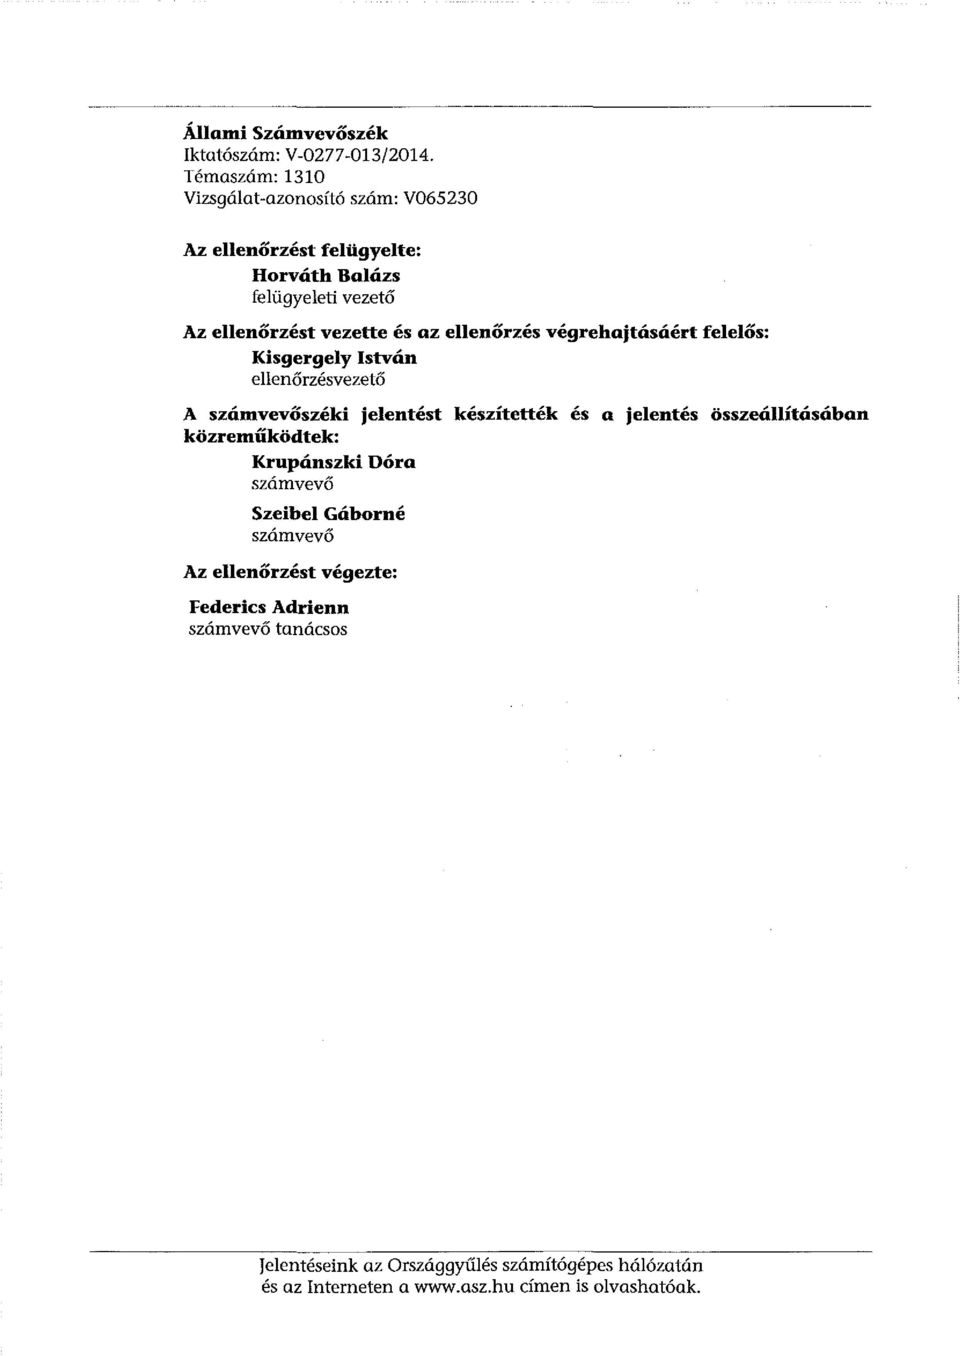 ellenőrzés végrehajtásáért felelős: Kisgergely István ellenőrzésvezető A számvevőszéki jelentést készítették és a jelentés